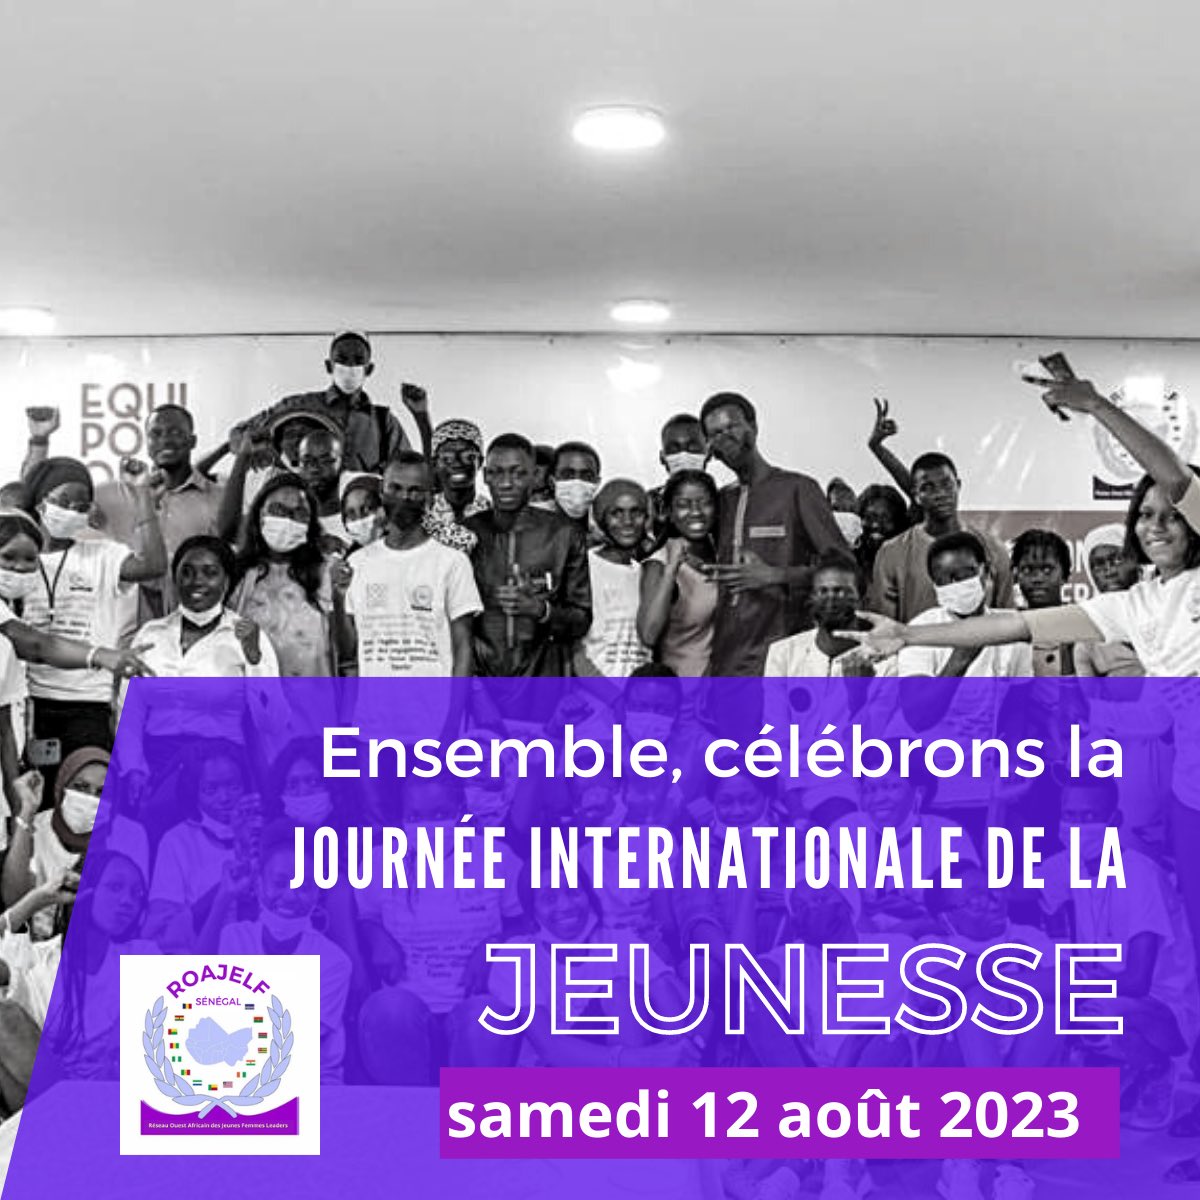 #JIJ2023 🎊 Excellente journée internationale de la jeunesse !!! Samedi 12 août 2023. Un clin d’œil aux jeunes membres du ROAJELF SENEGAL pour leur engagement dans le développement socio-professionnel des jeunes filles et femmes au Sénégal. JËRËJËF 🤝 #jeunesse #senegal